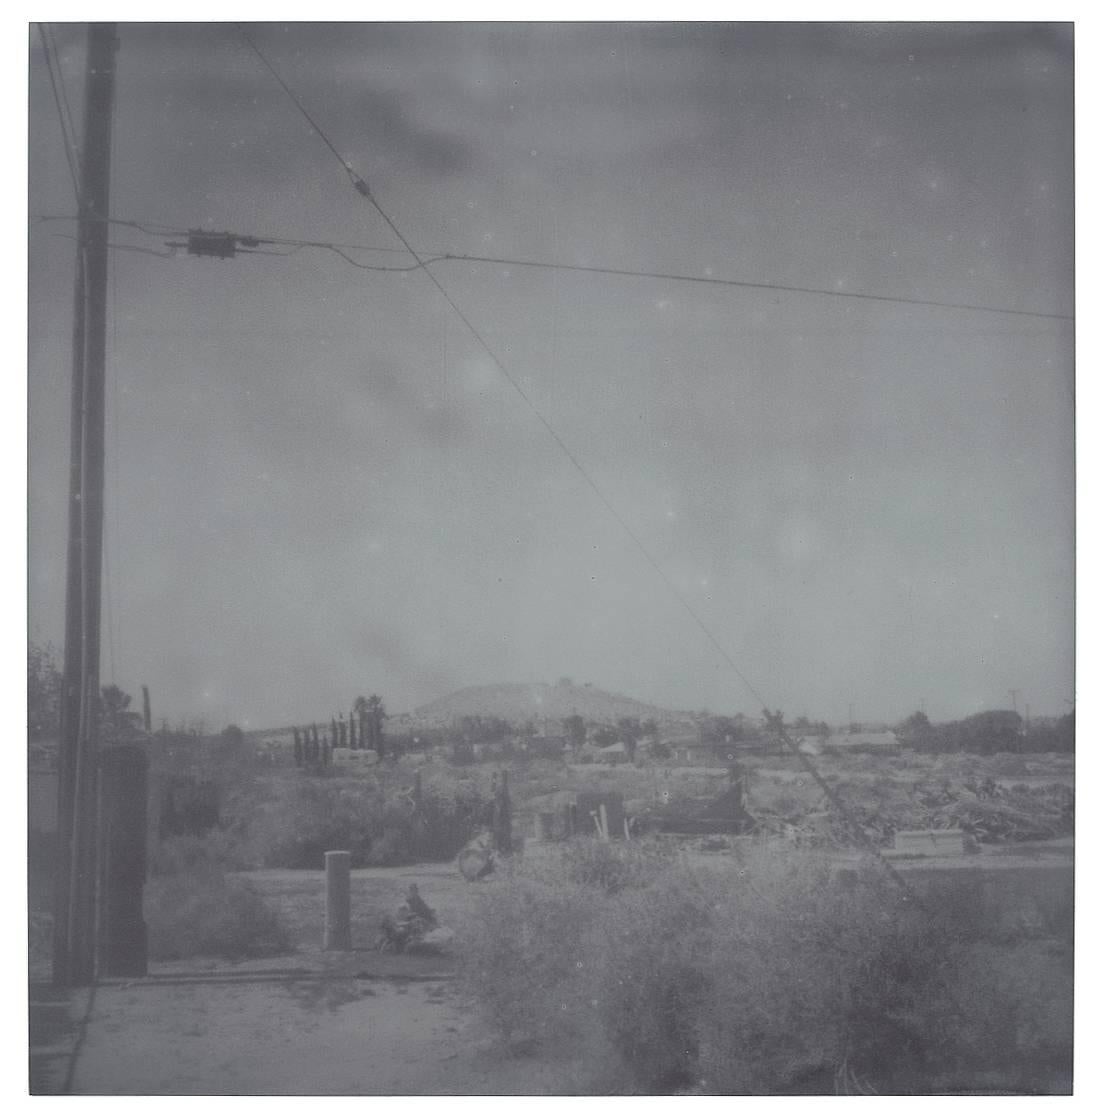 Oasis (Sidewinder) – Landschaft, Schwarz-Weiß, zeitgenössisch, Polaroid – Photograph von Stefanie Schneider